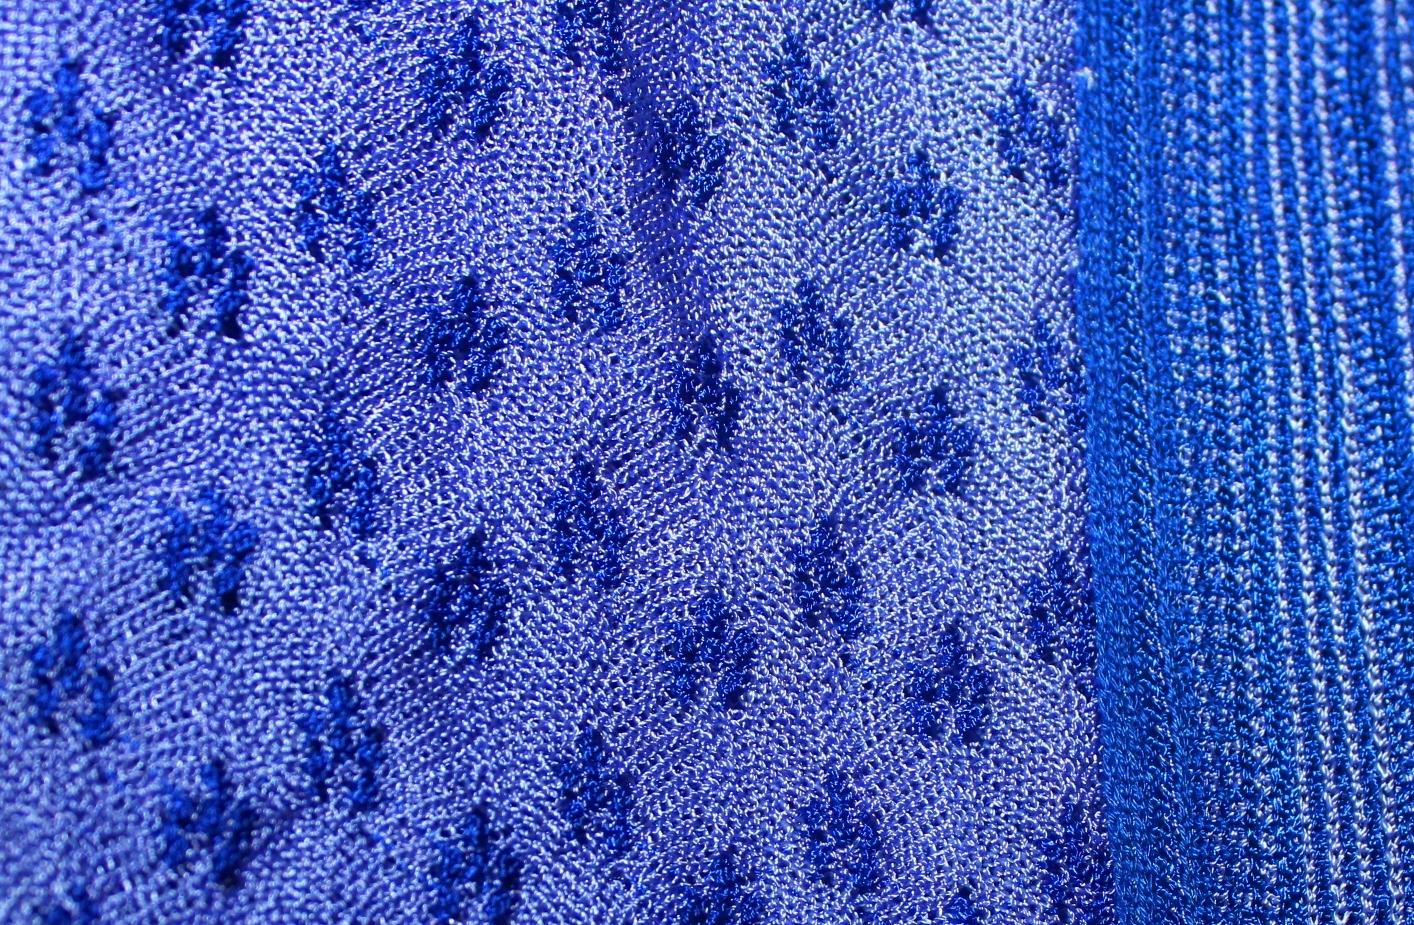 Purple NEW Missoni Crochet Knit Kaftan Tunic Cover Up Caftan Dress S